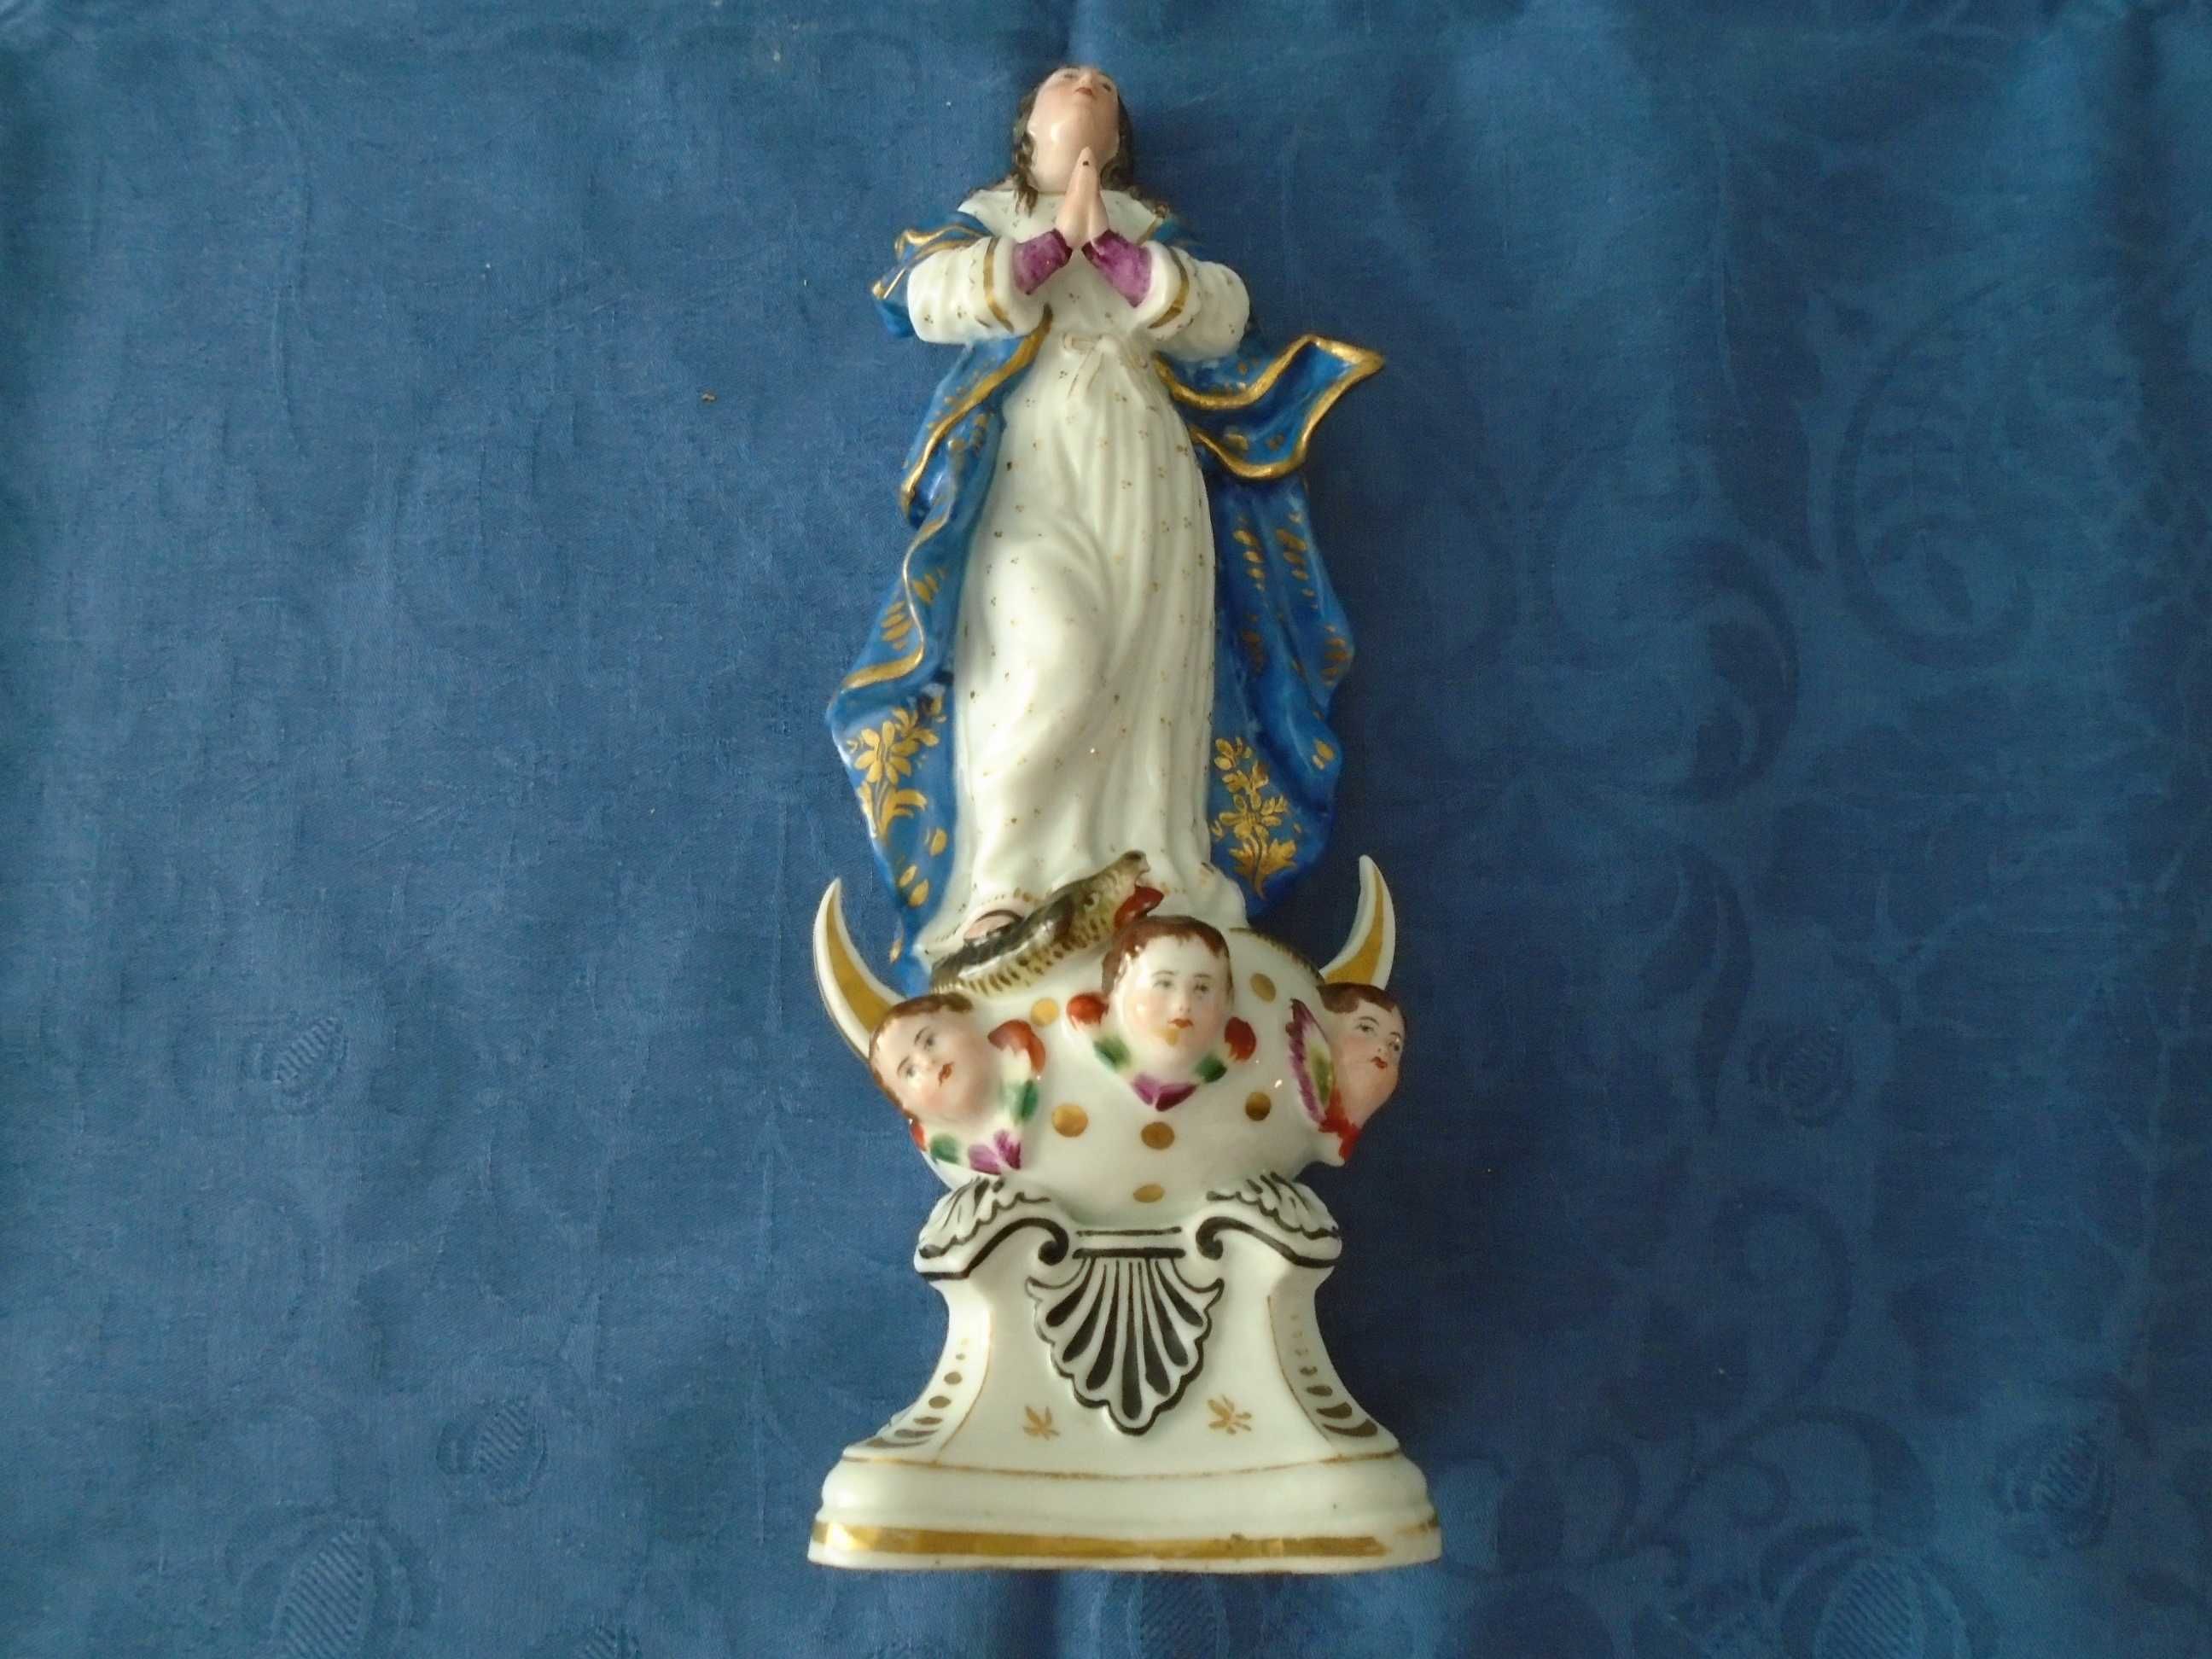 Nossa Senhora da Conceição em porcelana - peça muito antiga